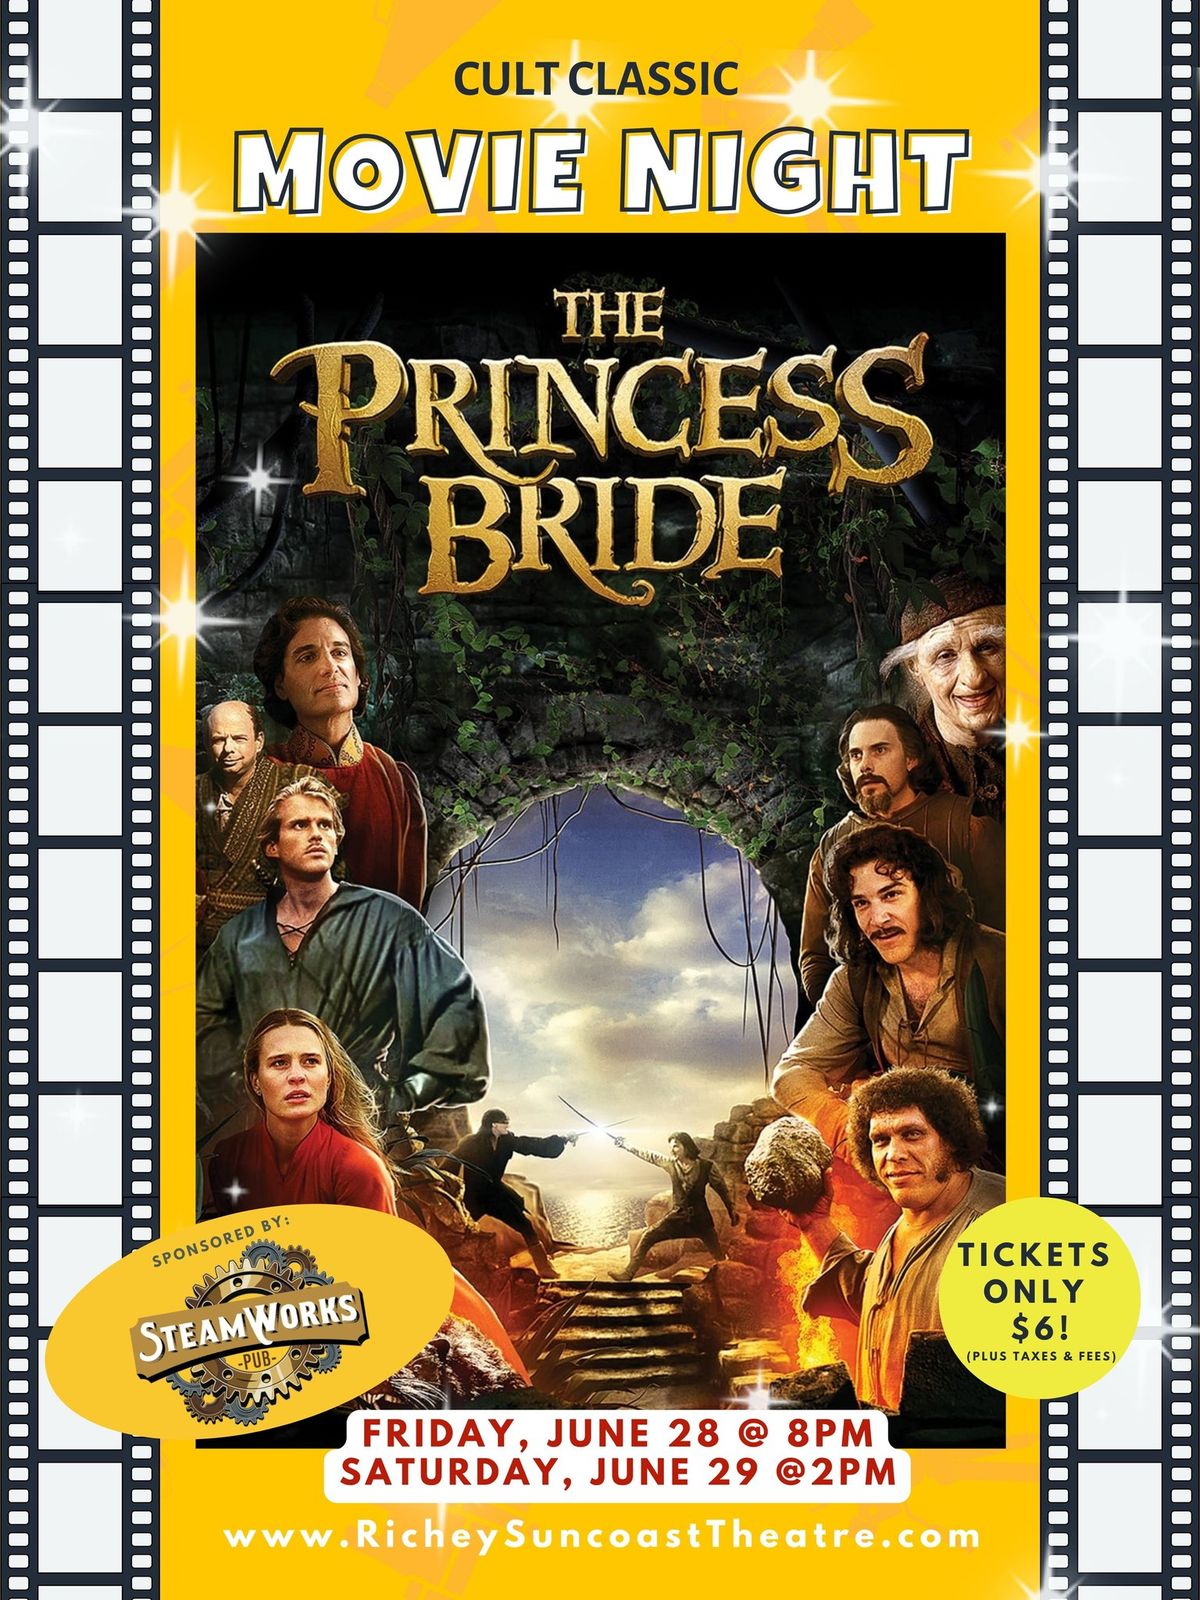 The Princess Bride - Classic Movie Night